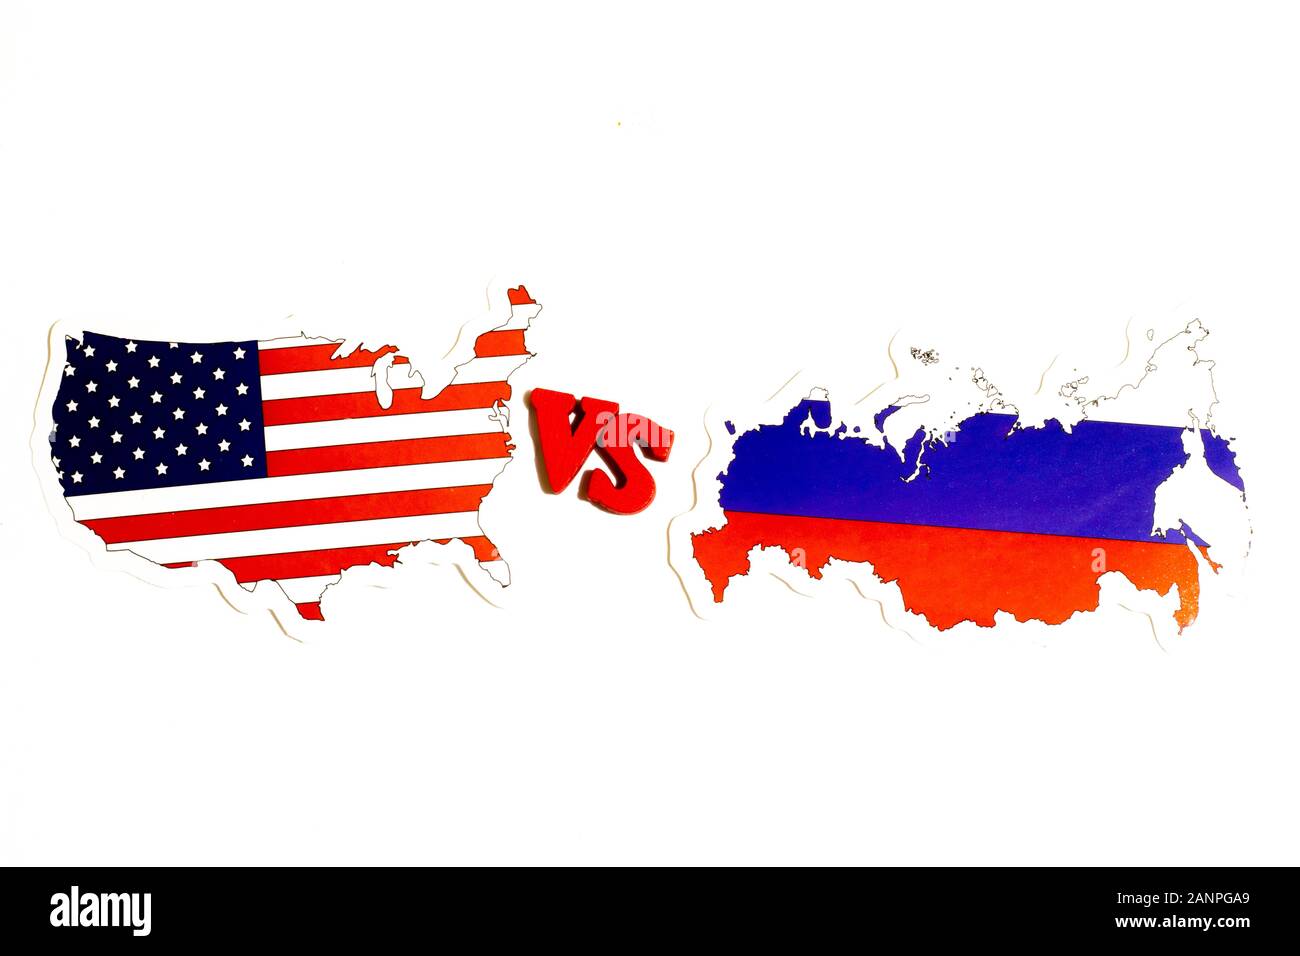 Los Angeles, Kalifornien, USA - 17. Januar 2020: Russland gegen USA politisches Konzept Abbildung: Amerika vs. Russische Föderation, Illustrierend Stockfoto